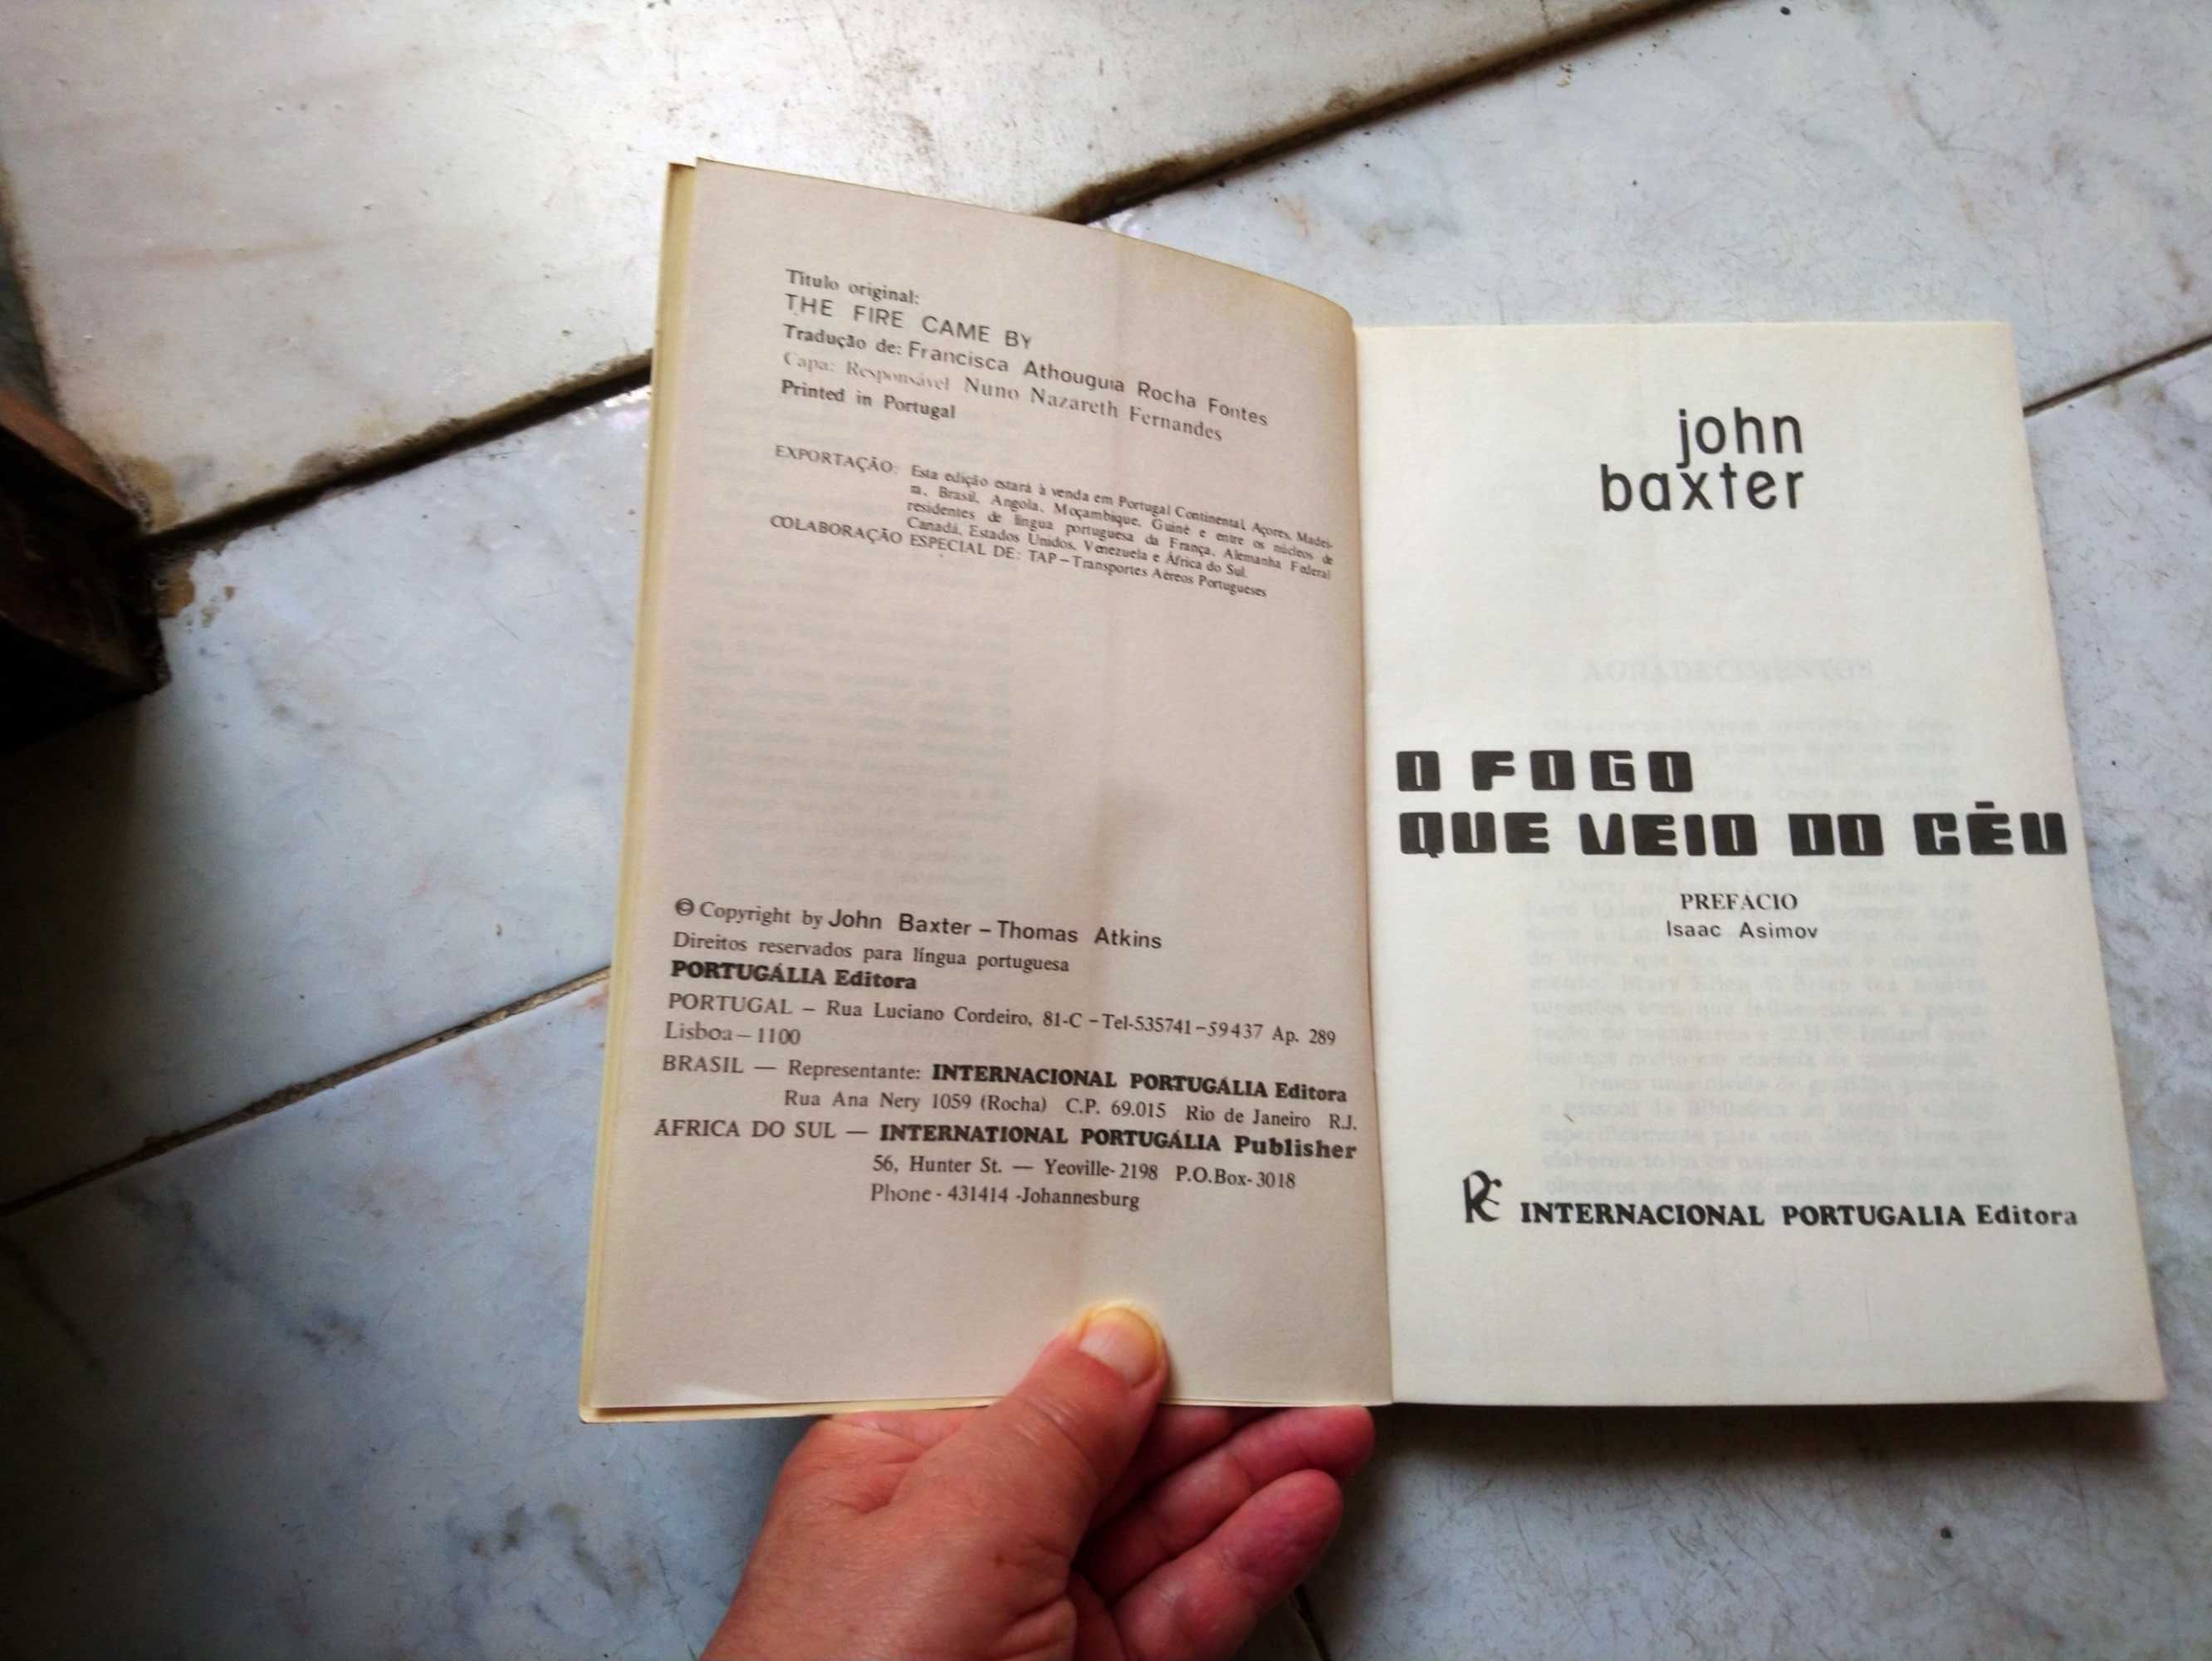 Livros "Pão com Manteiga" (1980) e Outros